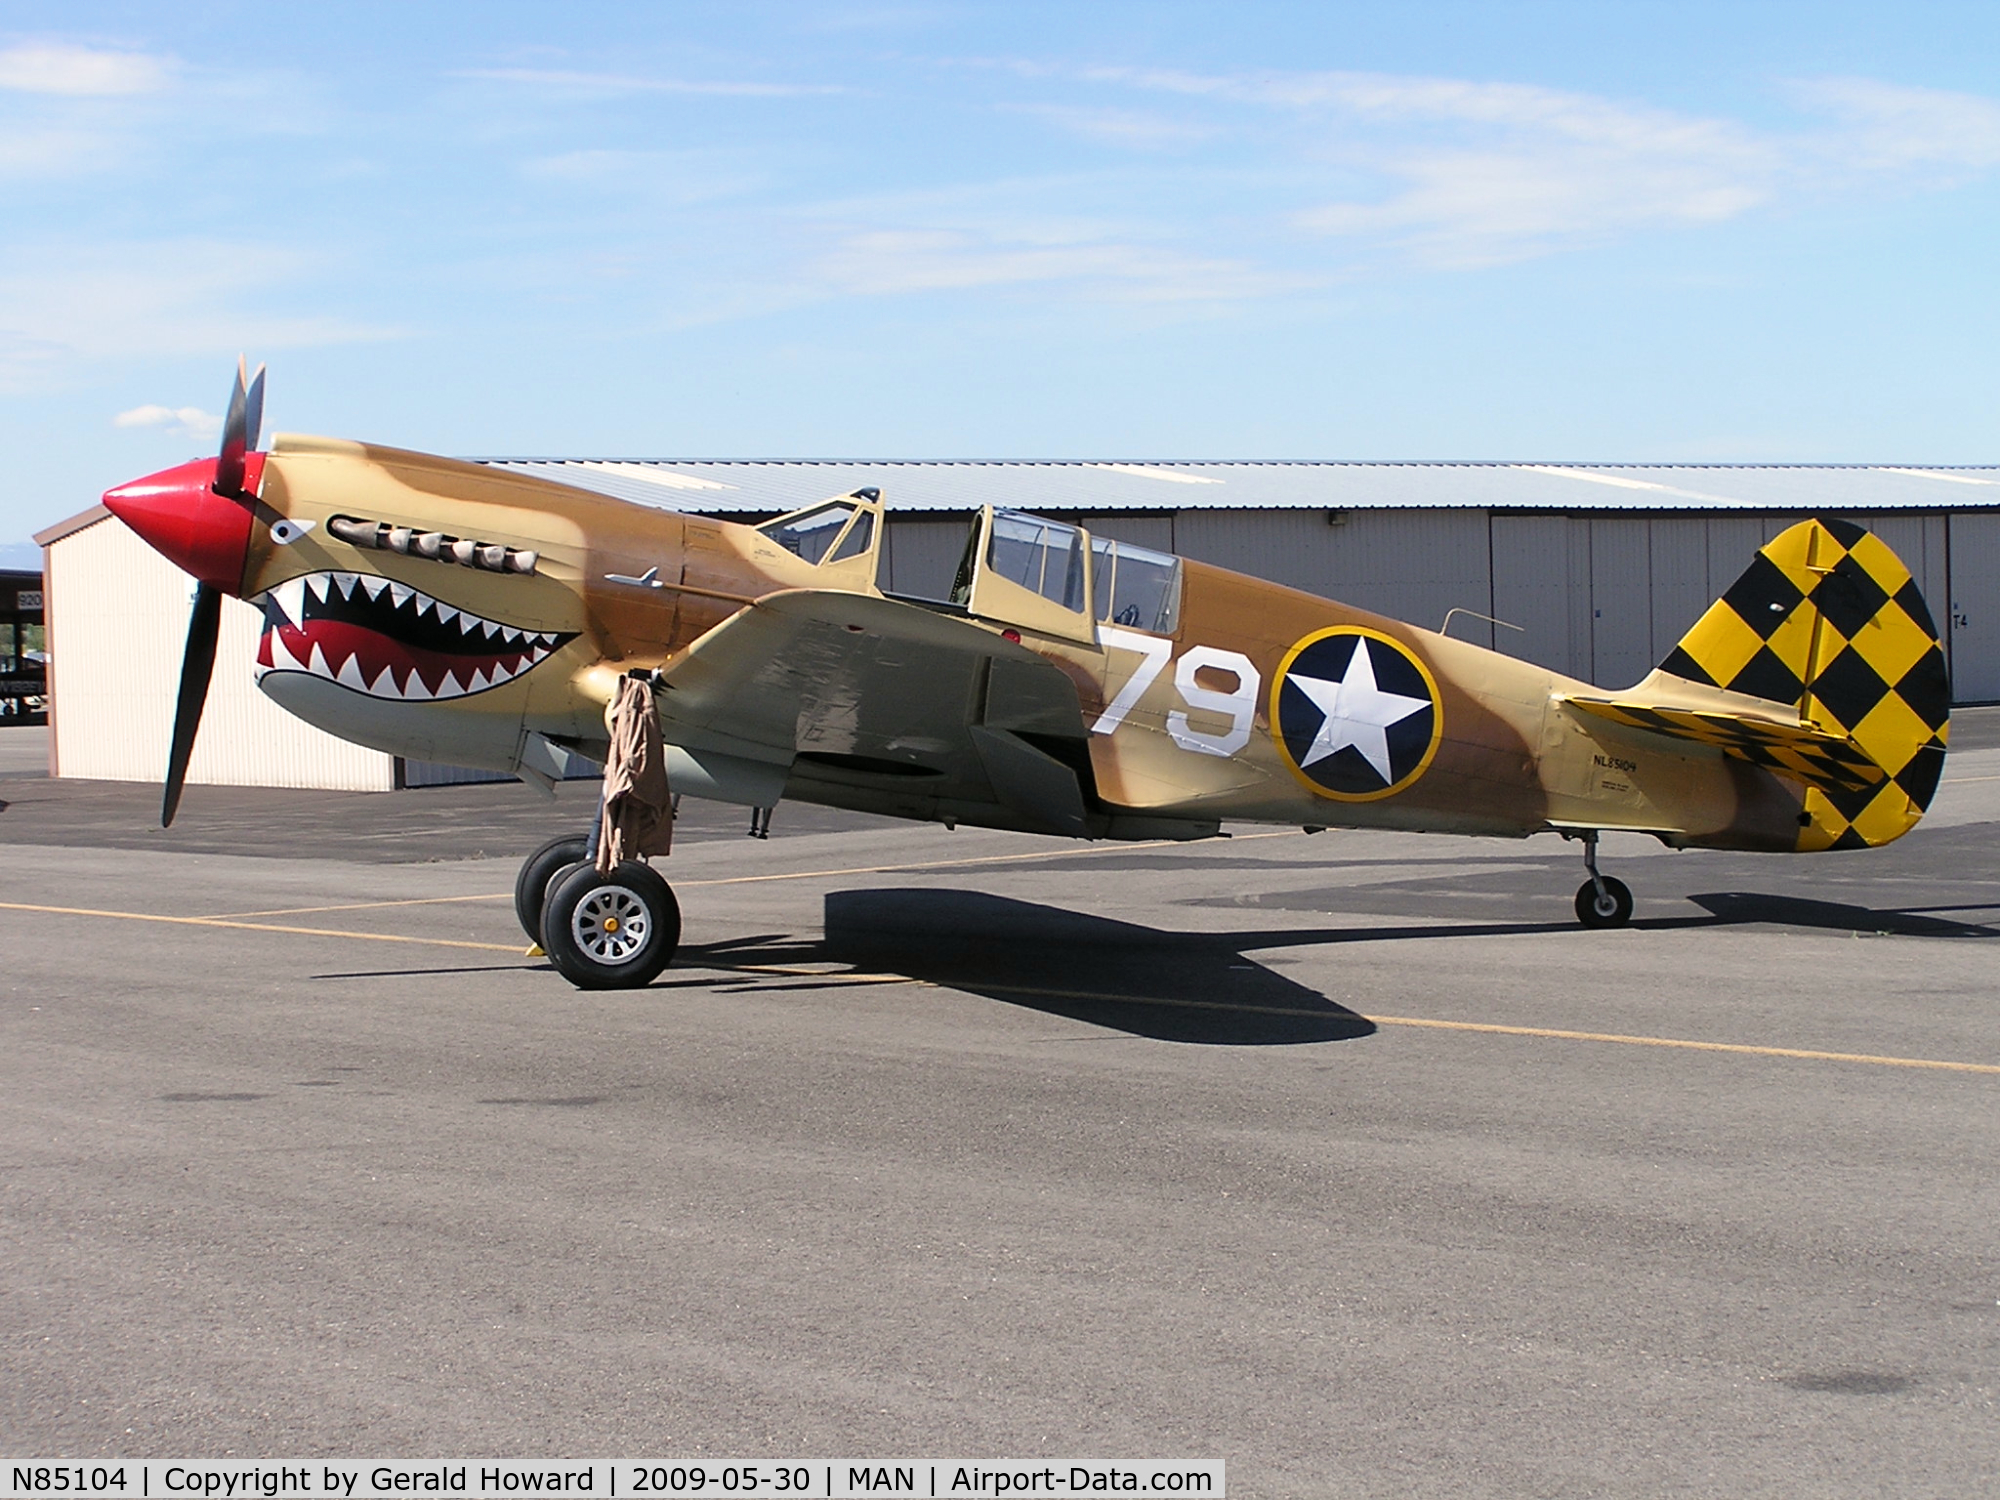 N85104, Curtiss P-40N-5CU Kittyhawk C/N 28954/F858, Parked at Nampa air show.